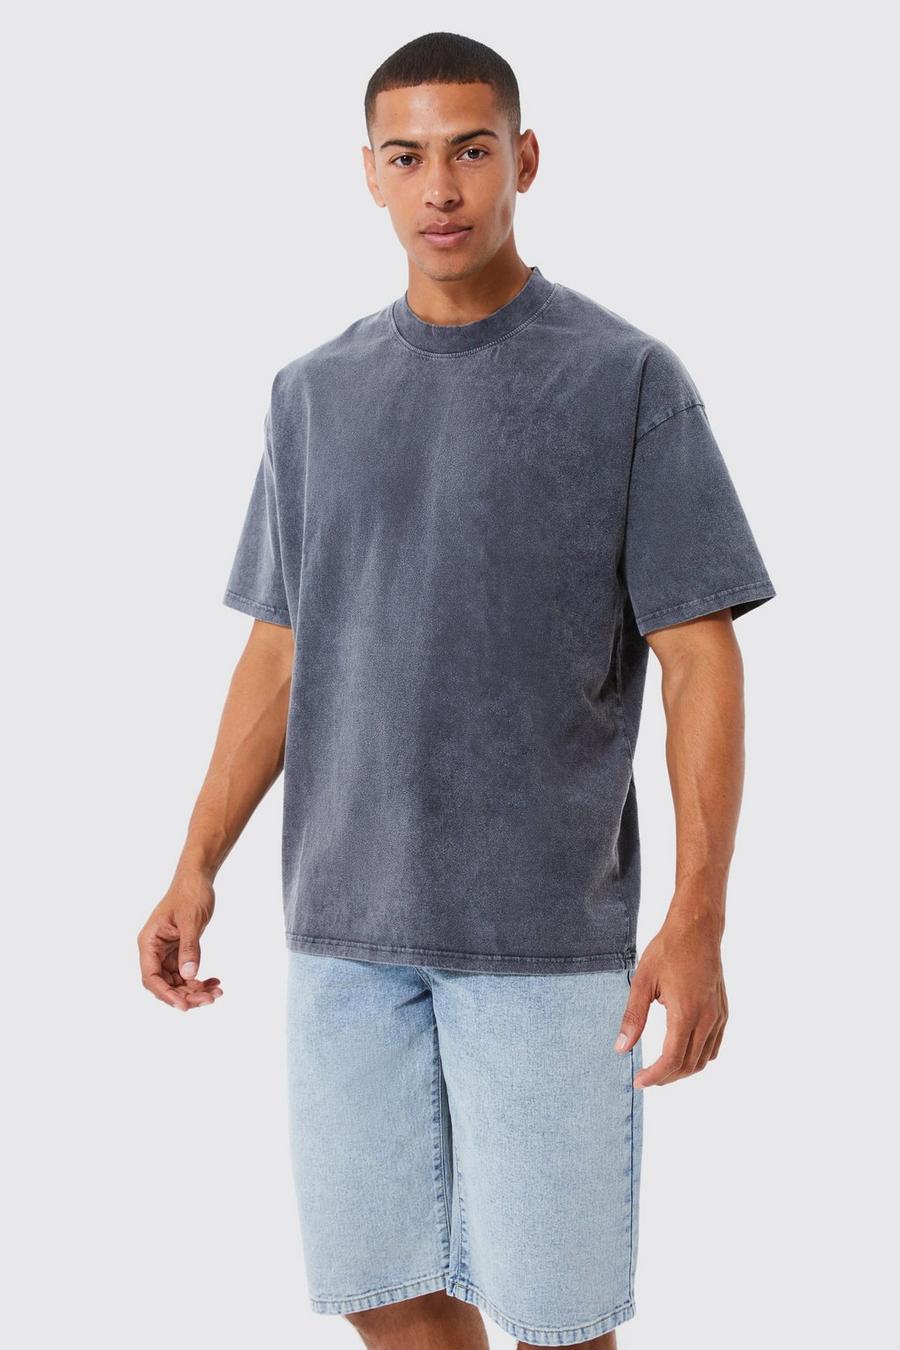 Charcoal Oversized Dik Gebleekt T-Shirt